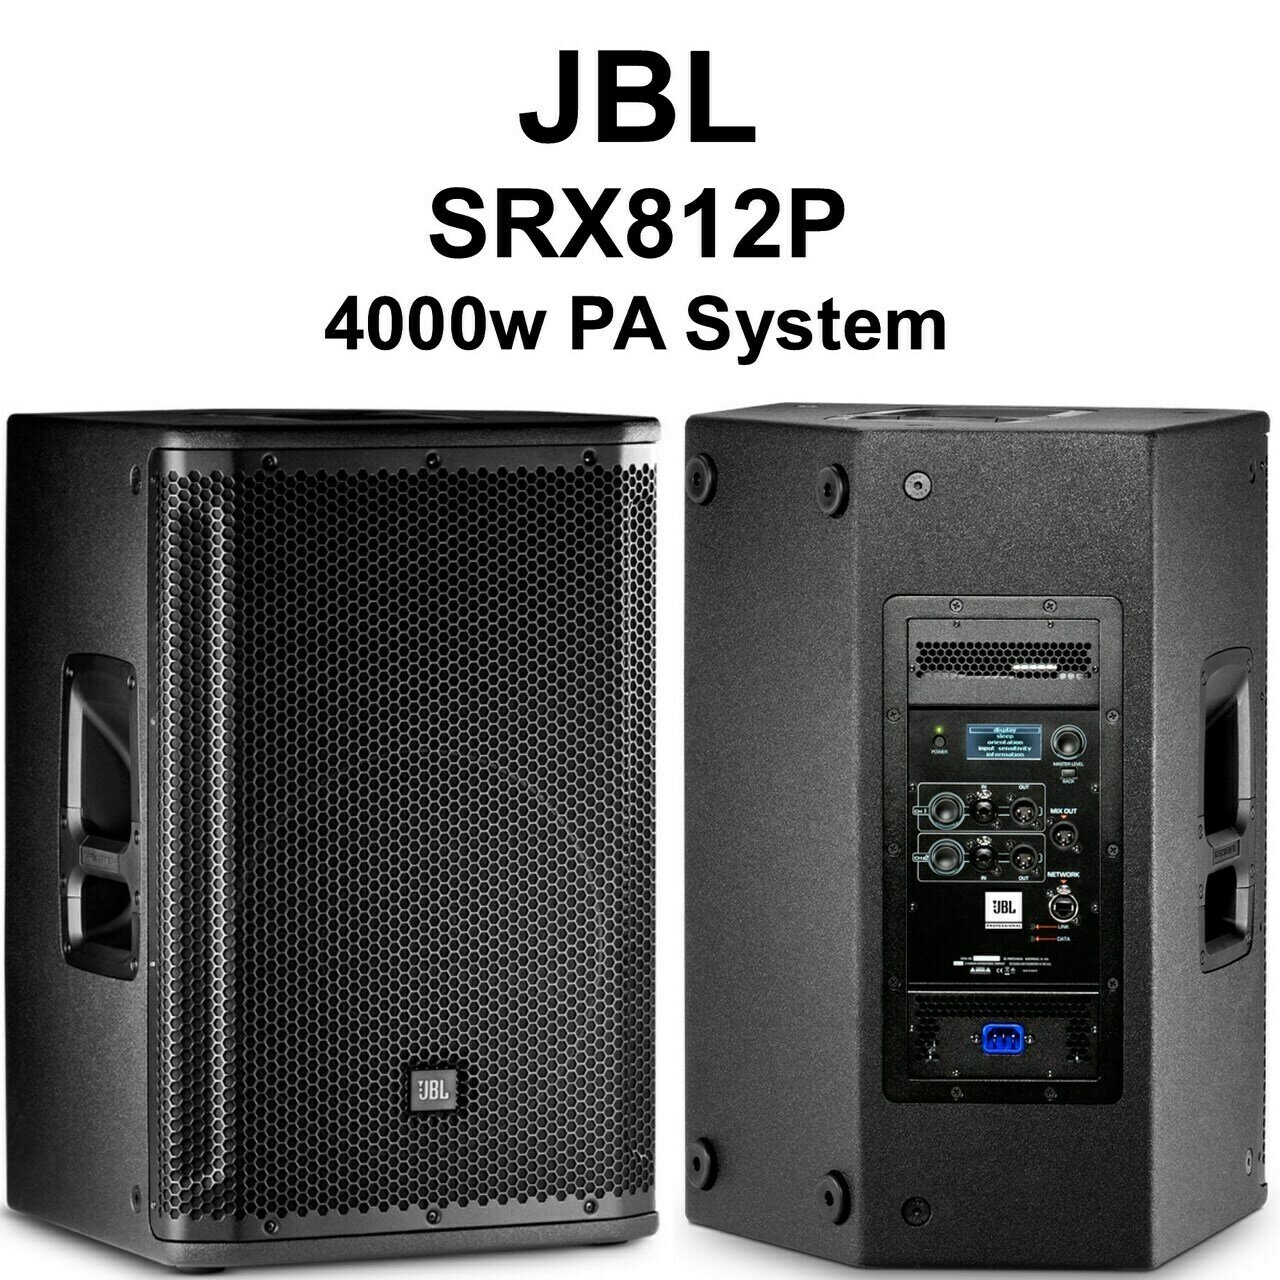 JBL SRX812P 12" Two-Way Bass Reflex Self Powered System
#JBSRX812P MFR #SRX812P